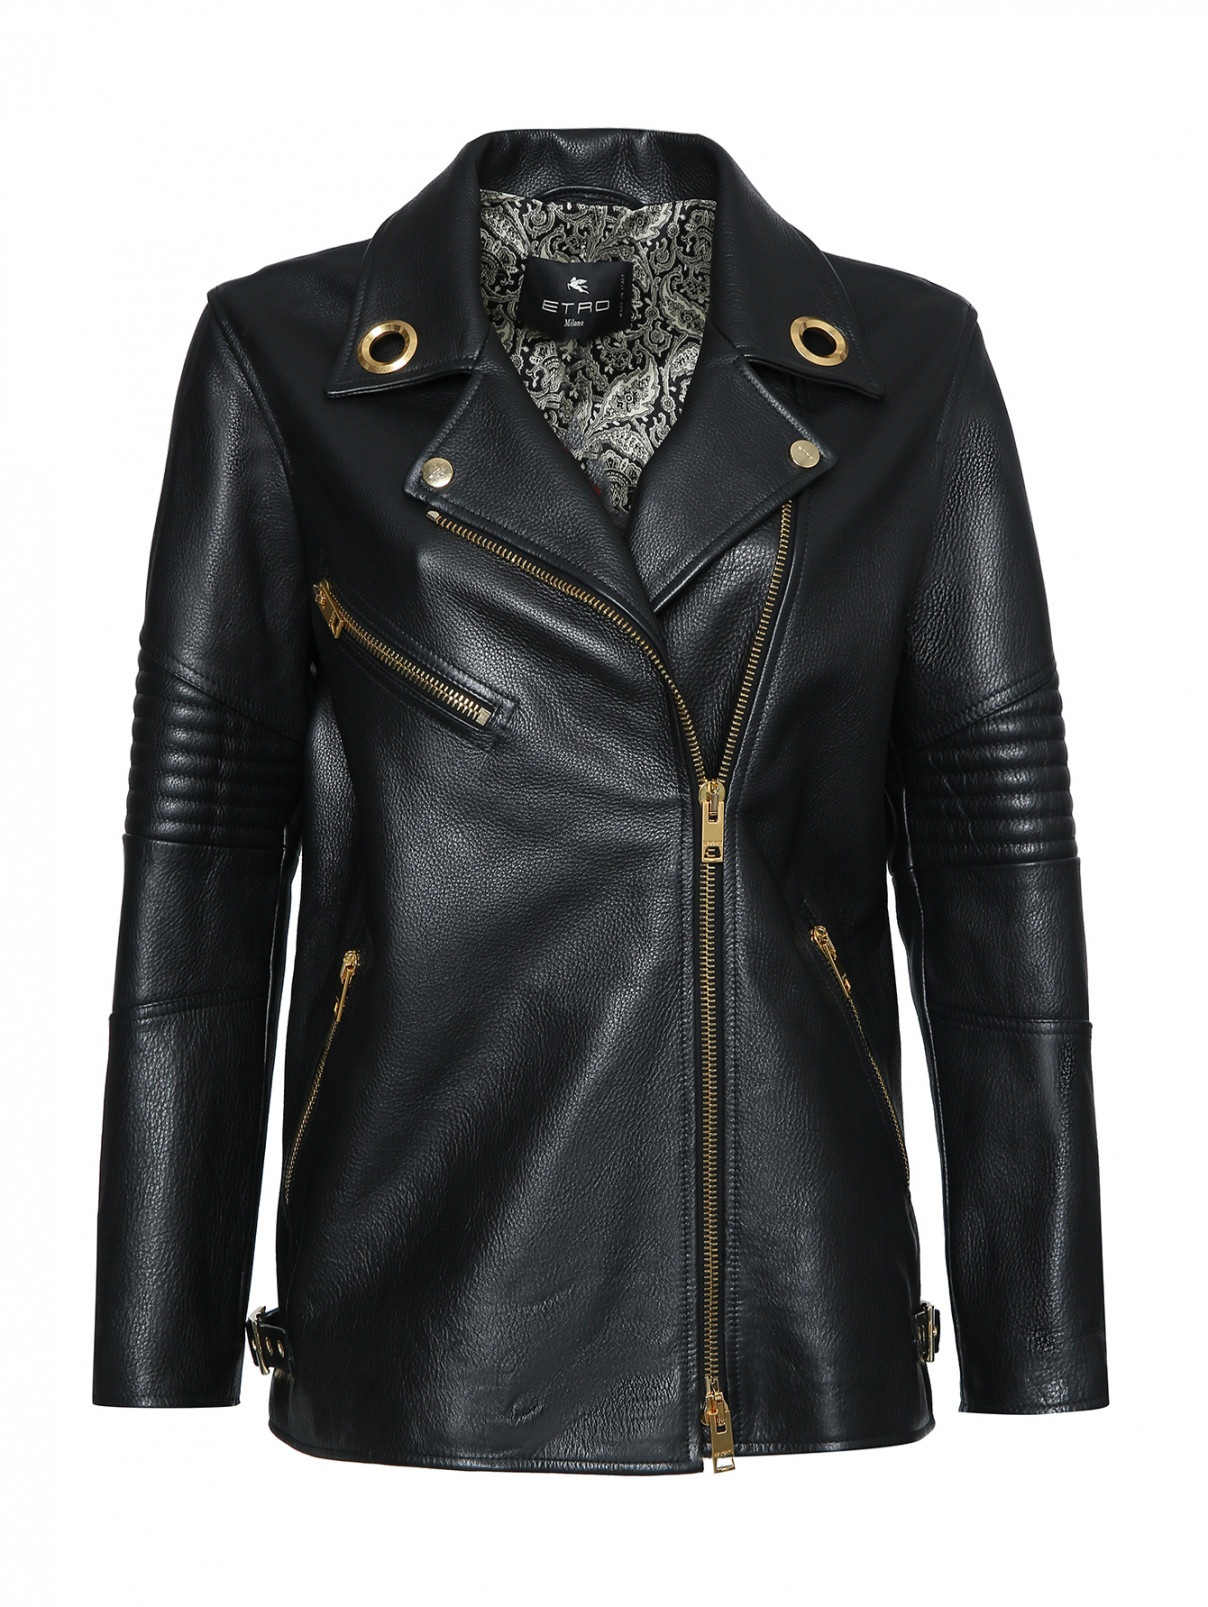 Кожаная куртка на молнии с карманами Etro  –  Общий вид  – Цвет:  Черный